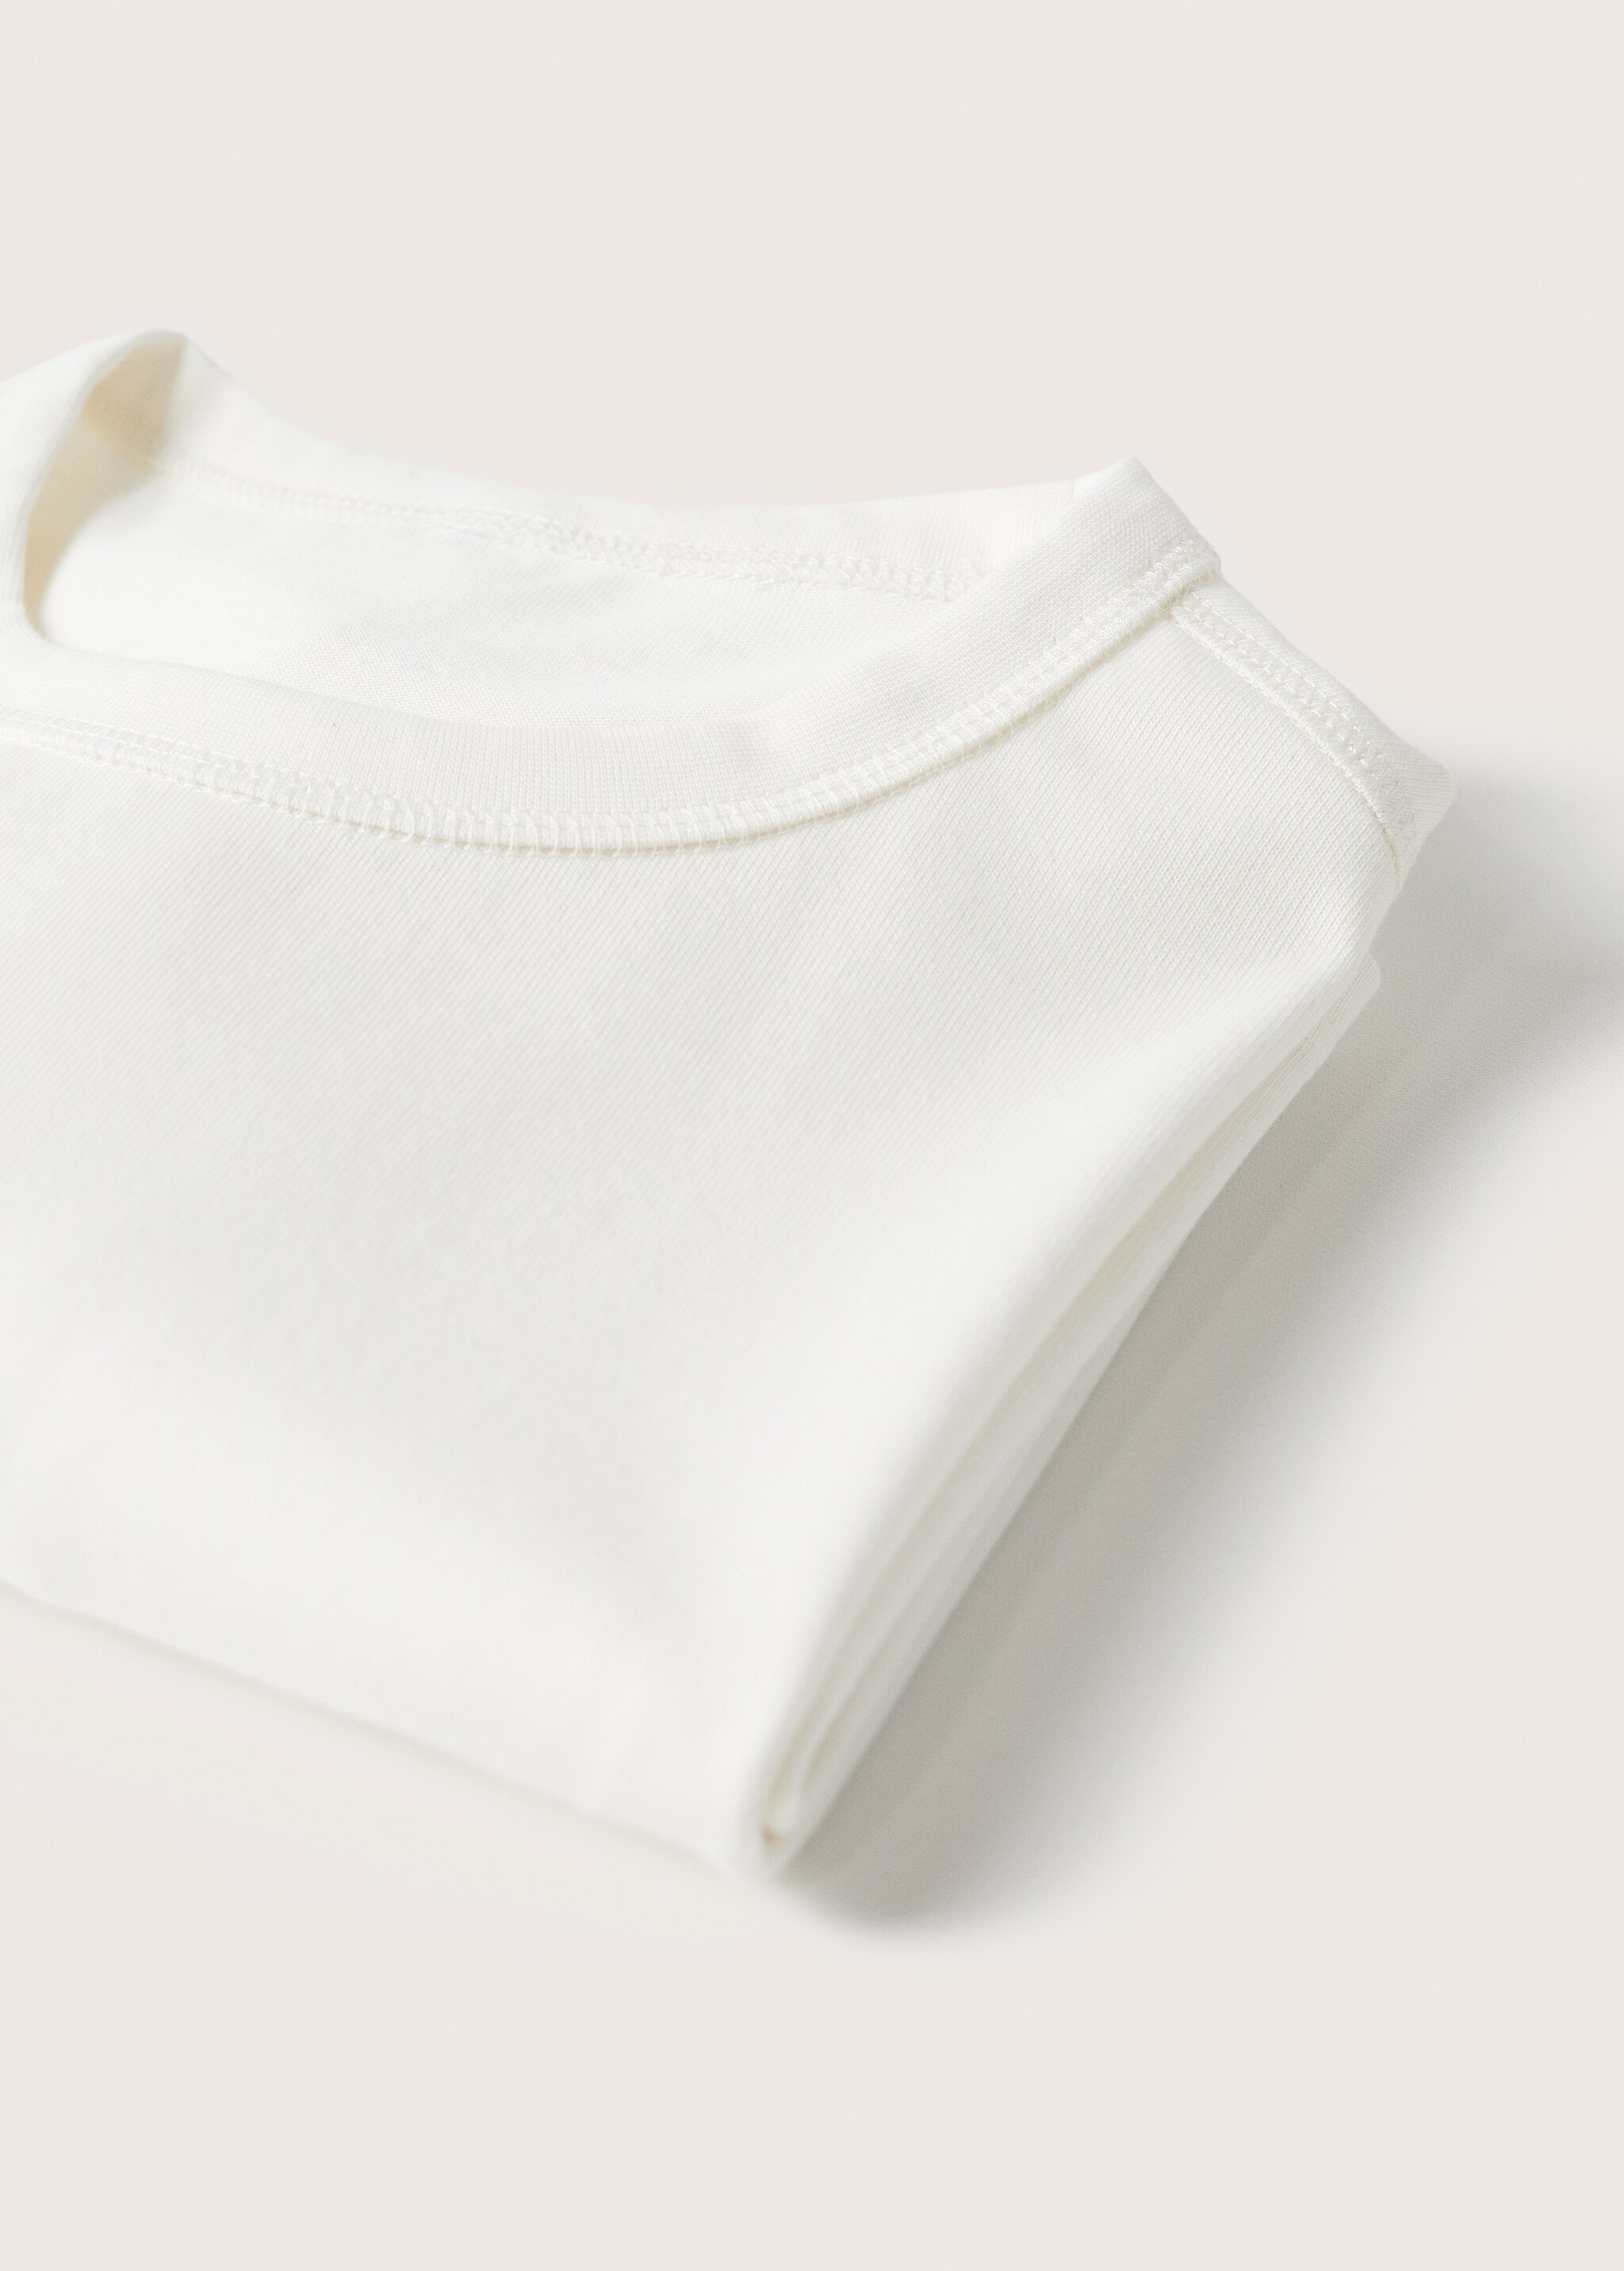 Camiseta algodón relaxed fit - Detalle del artículo 8